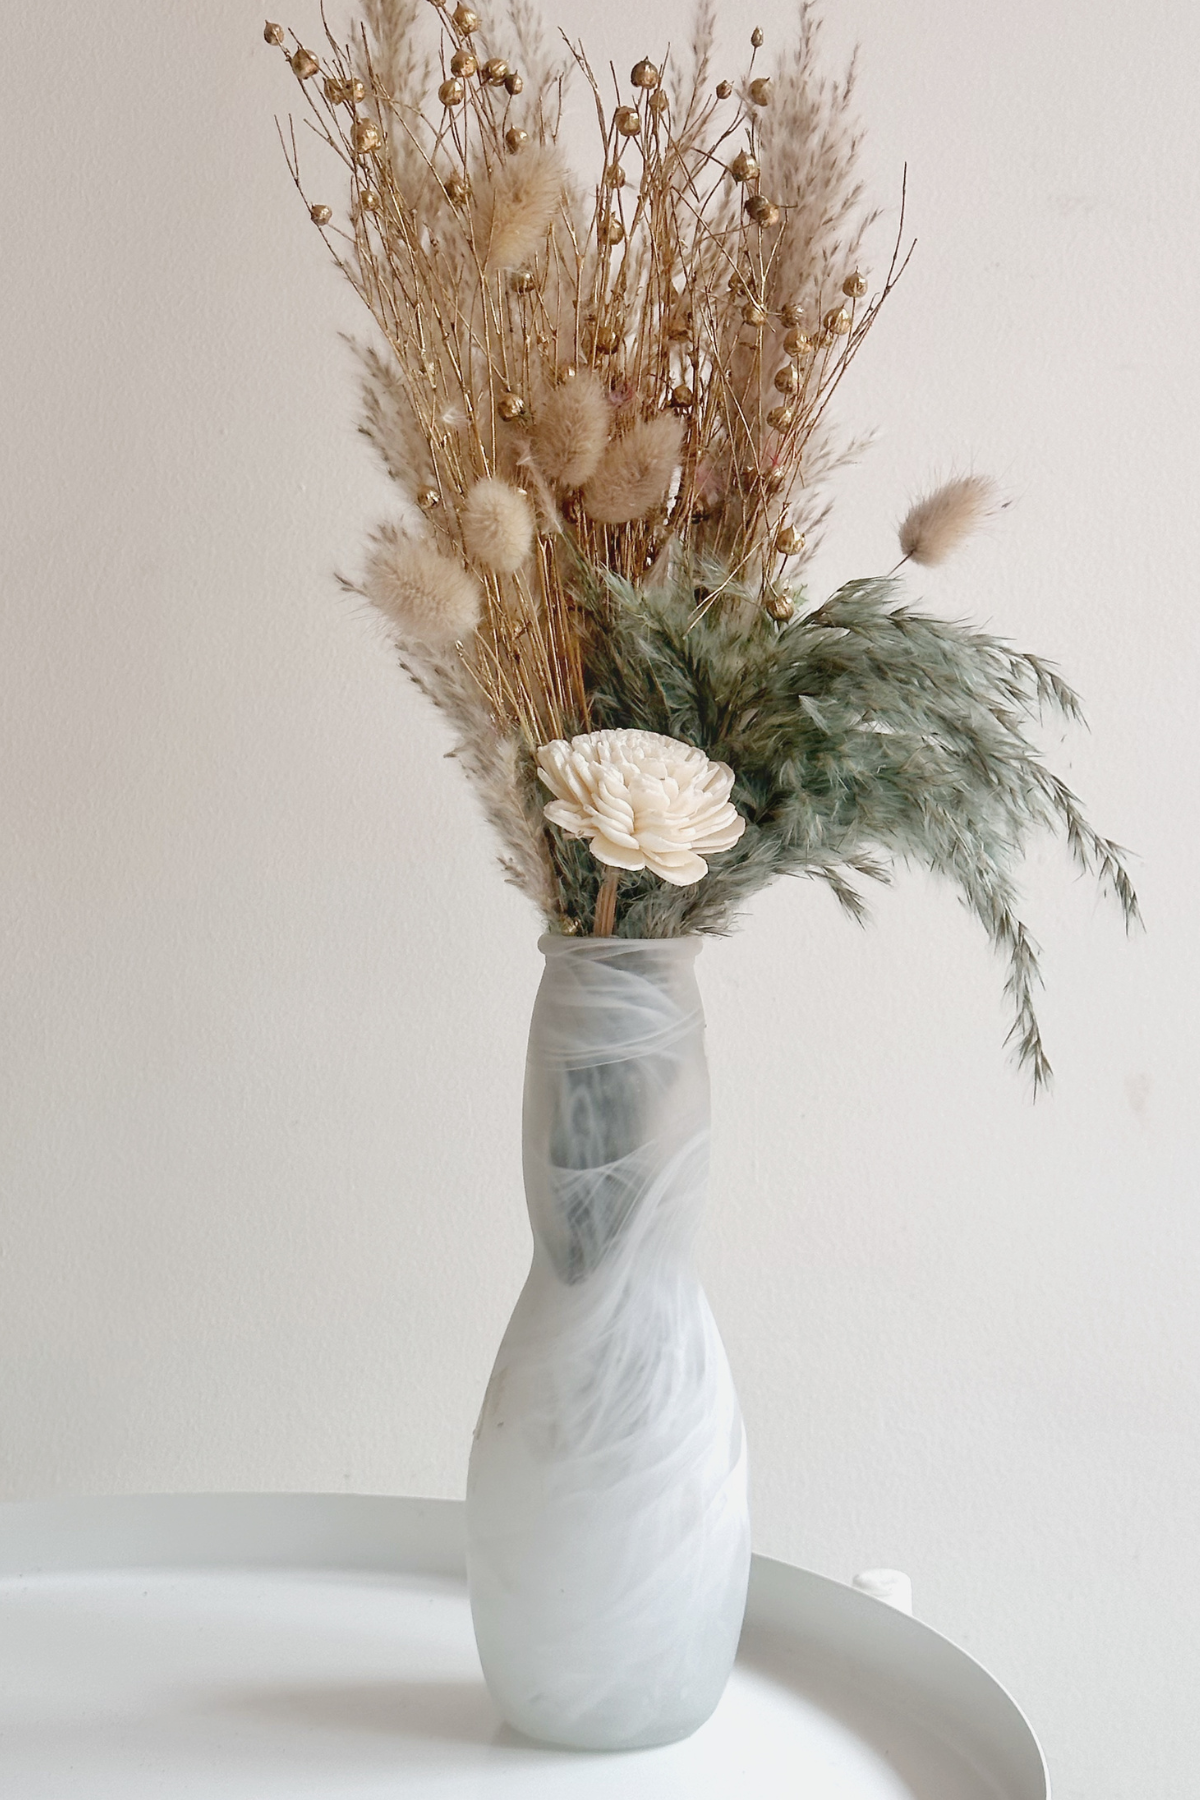 Handmade Turkish White Vase